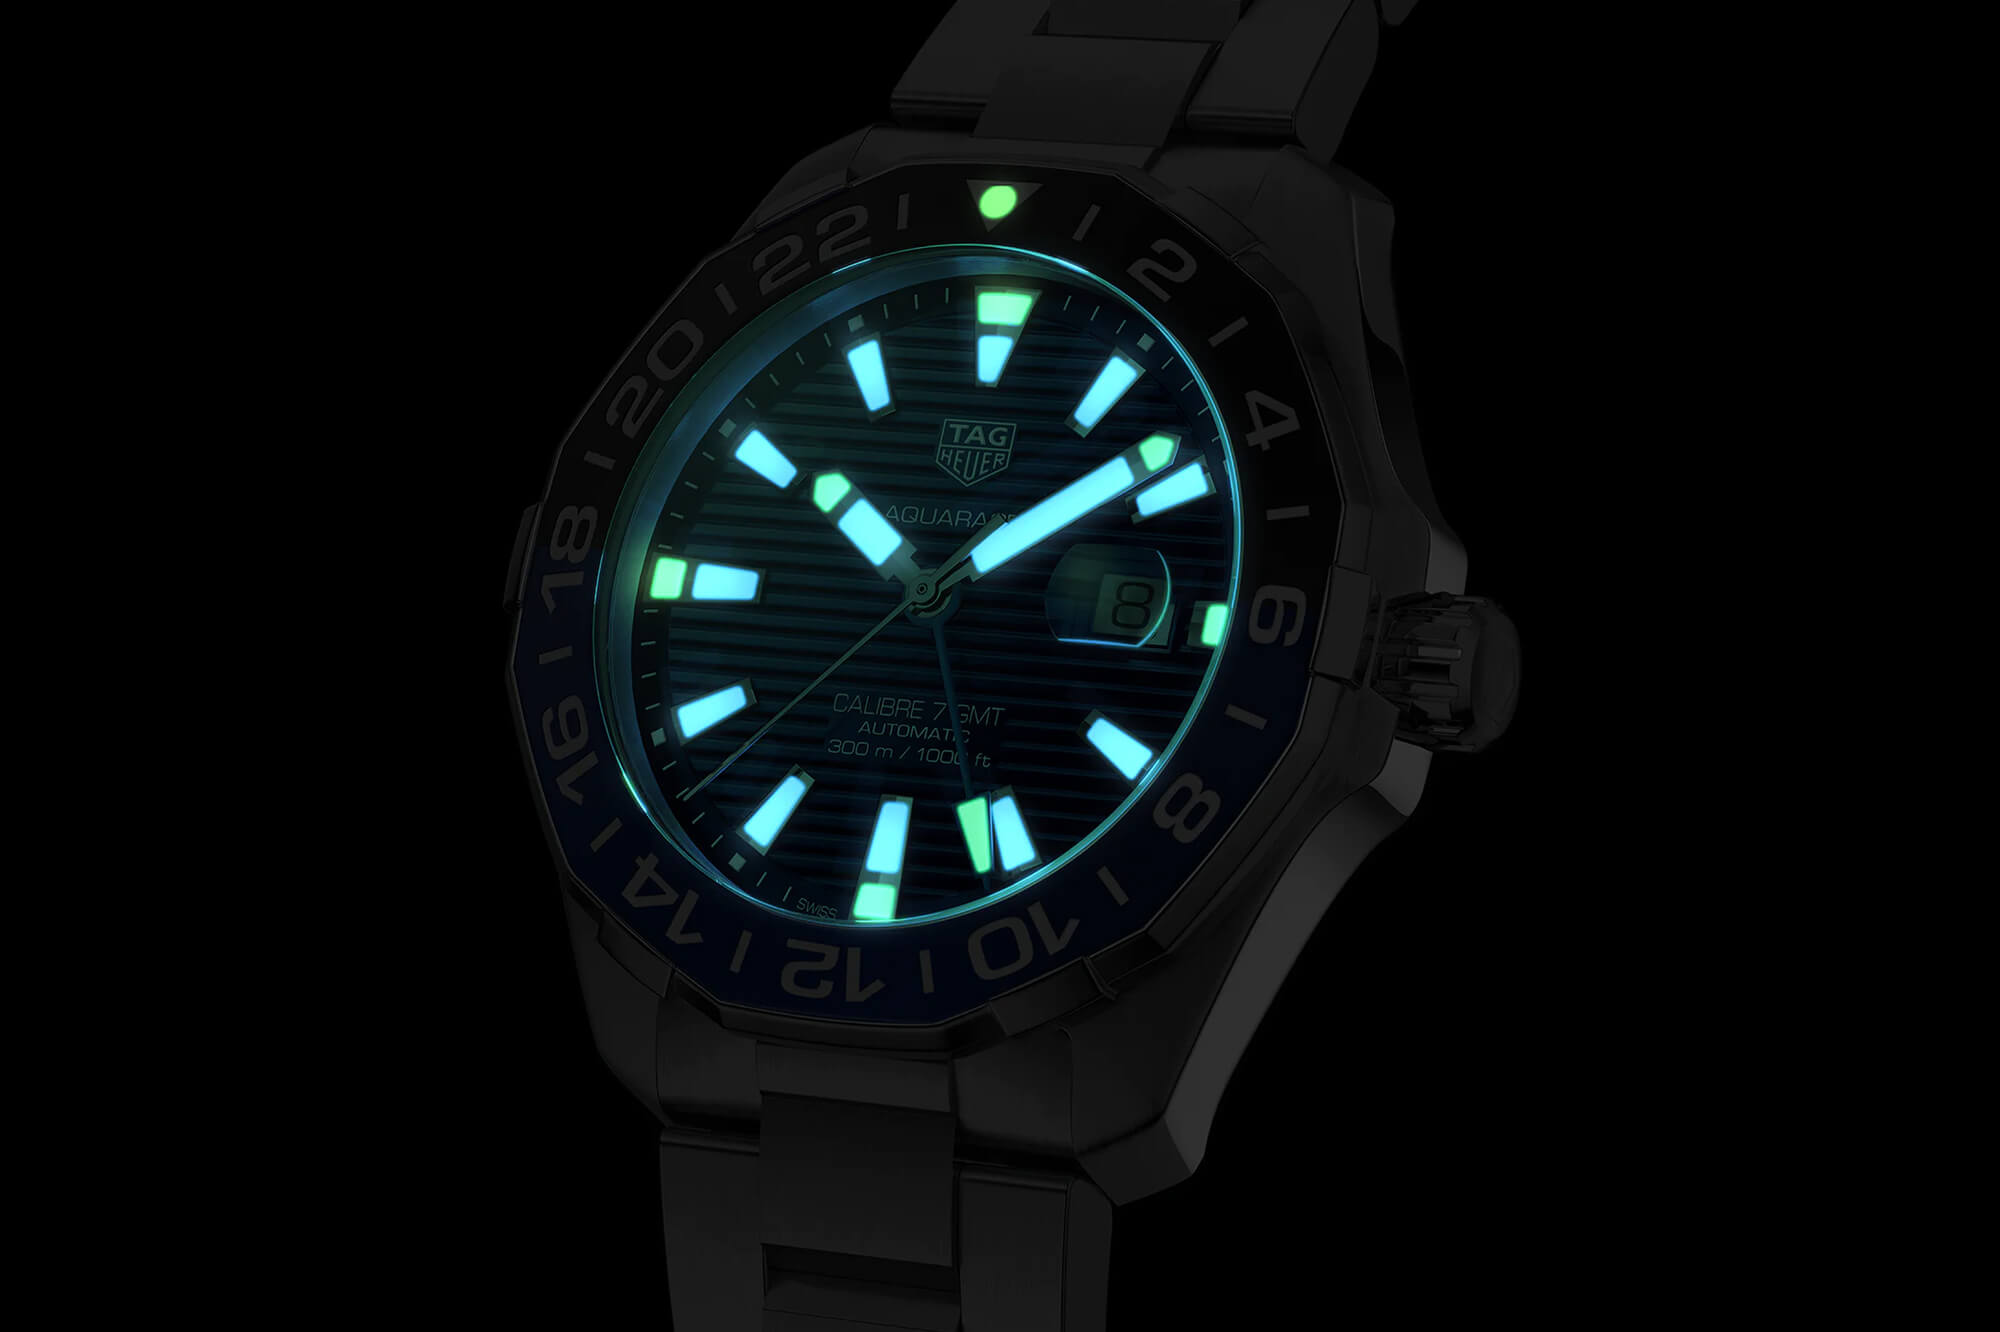 泰格豪雅航海员系列GMT蓝盘手表WAY201T.BA0927-复刻表